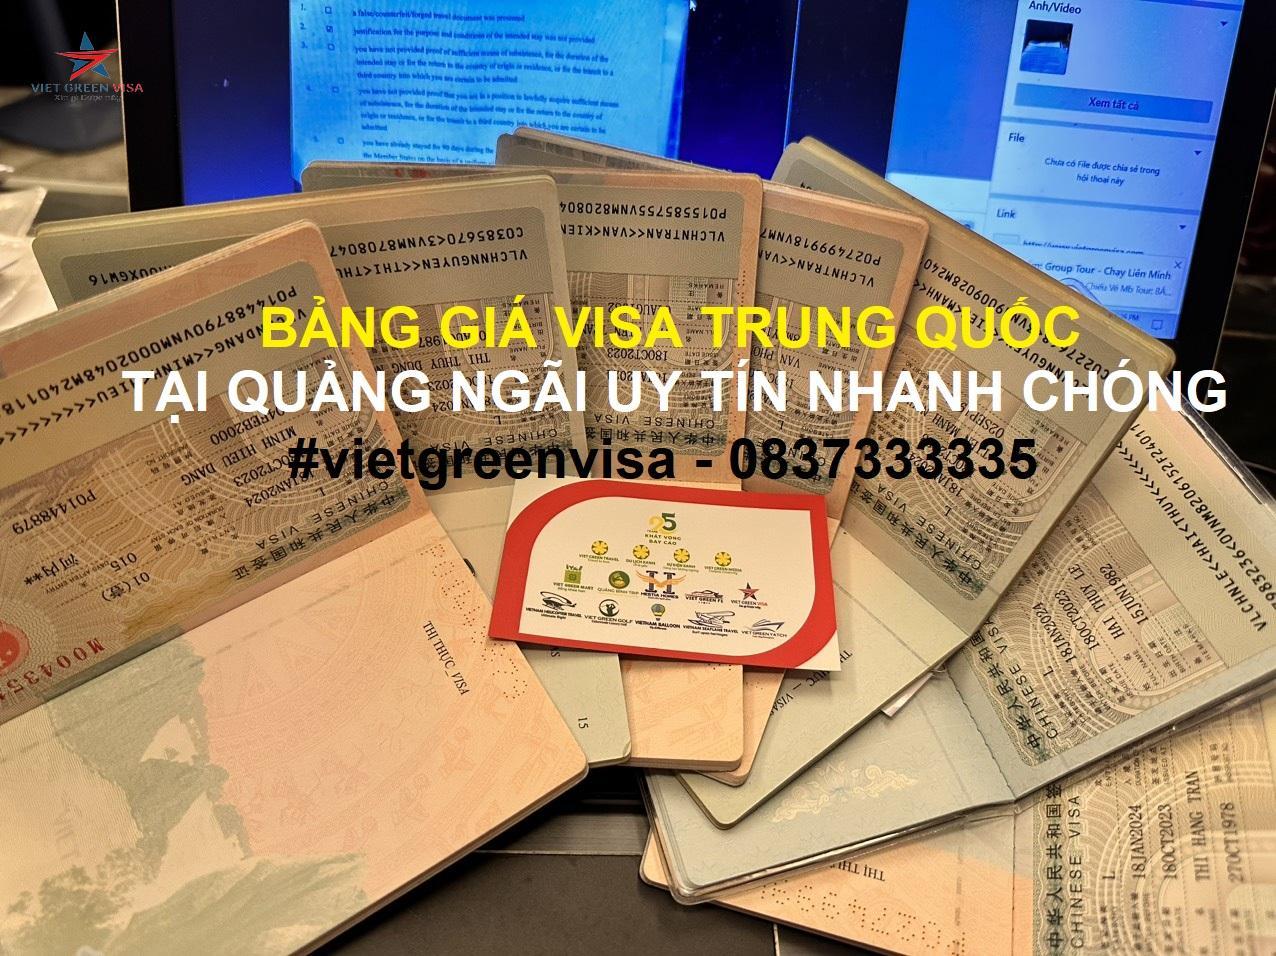 Dịch vụ xin visa Trung Quốc tại Quảng Ngãi uy tín nhanh chóng